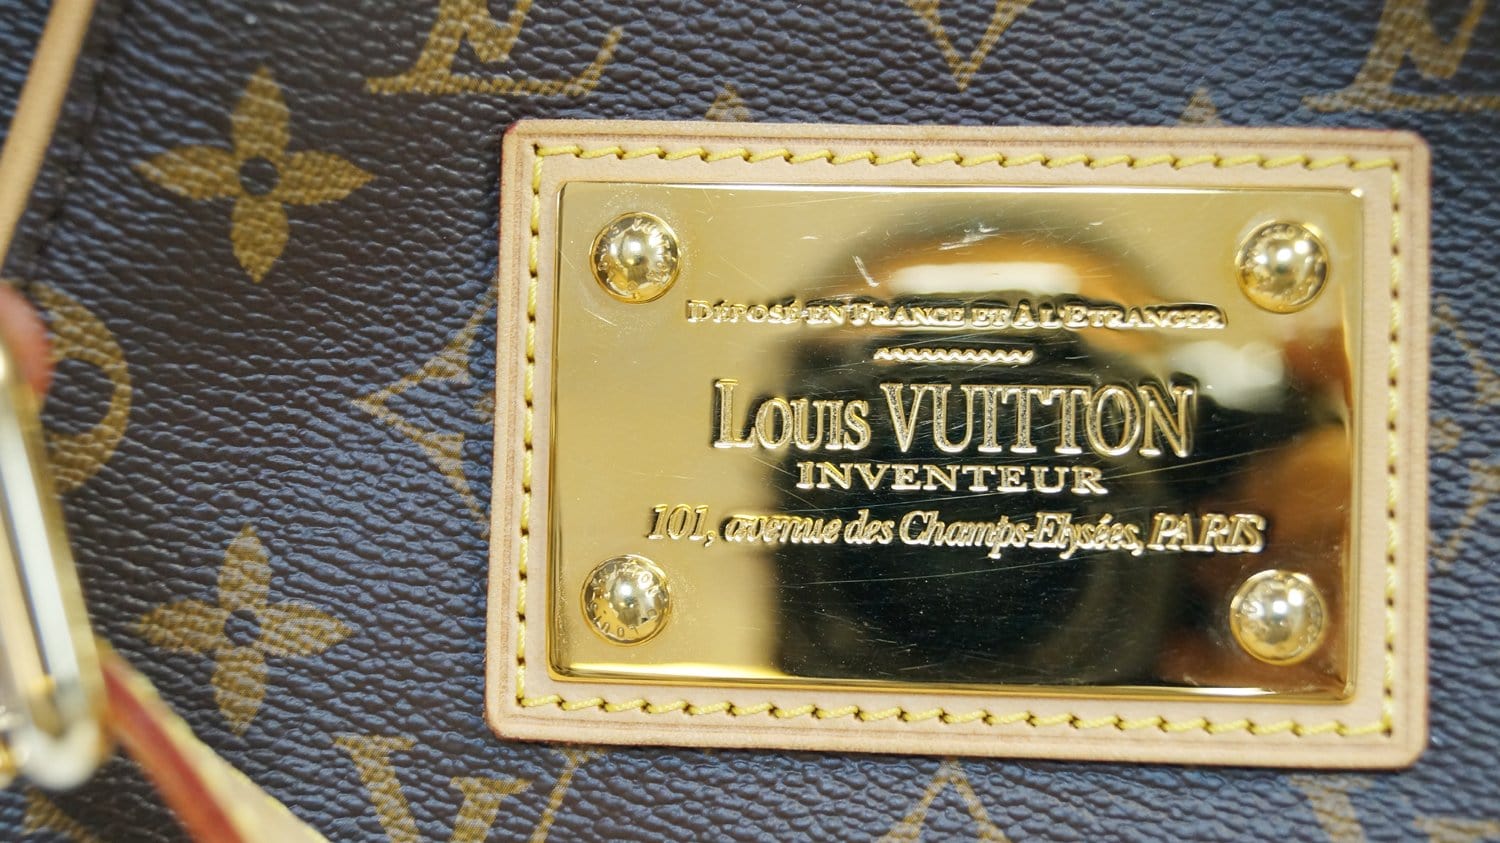 Authenticated used Louis Vuitton Galliera PM Women's Shoulder Bag M56382 Monogram Brown, Adult Unisex, Size: (HxWxD): 30cm x 34cm x 12cm / 11.81'' x